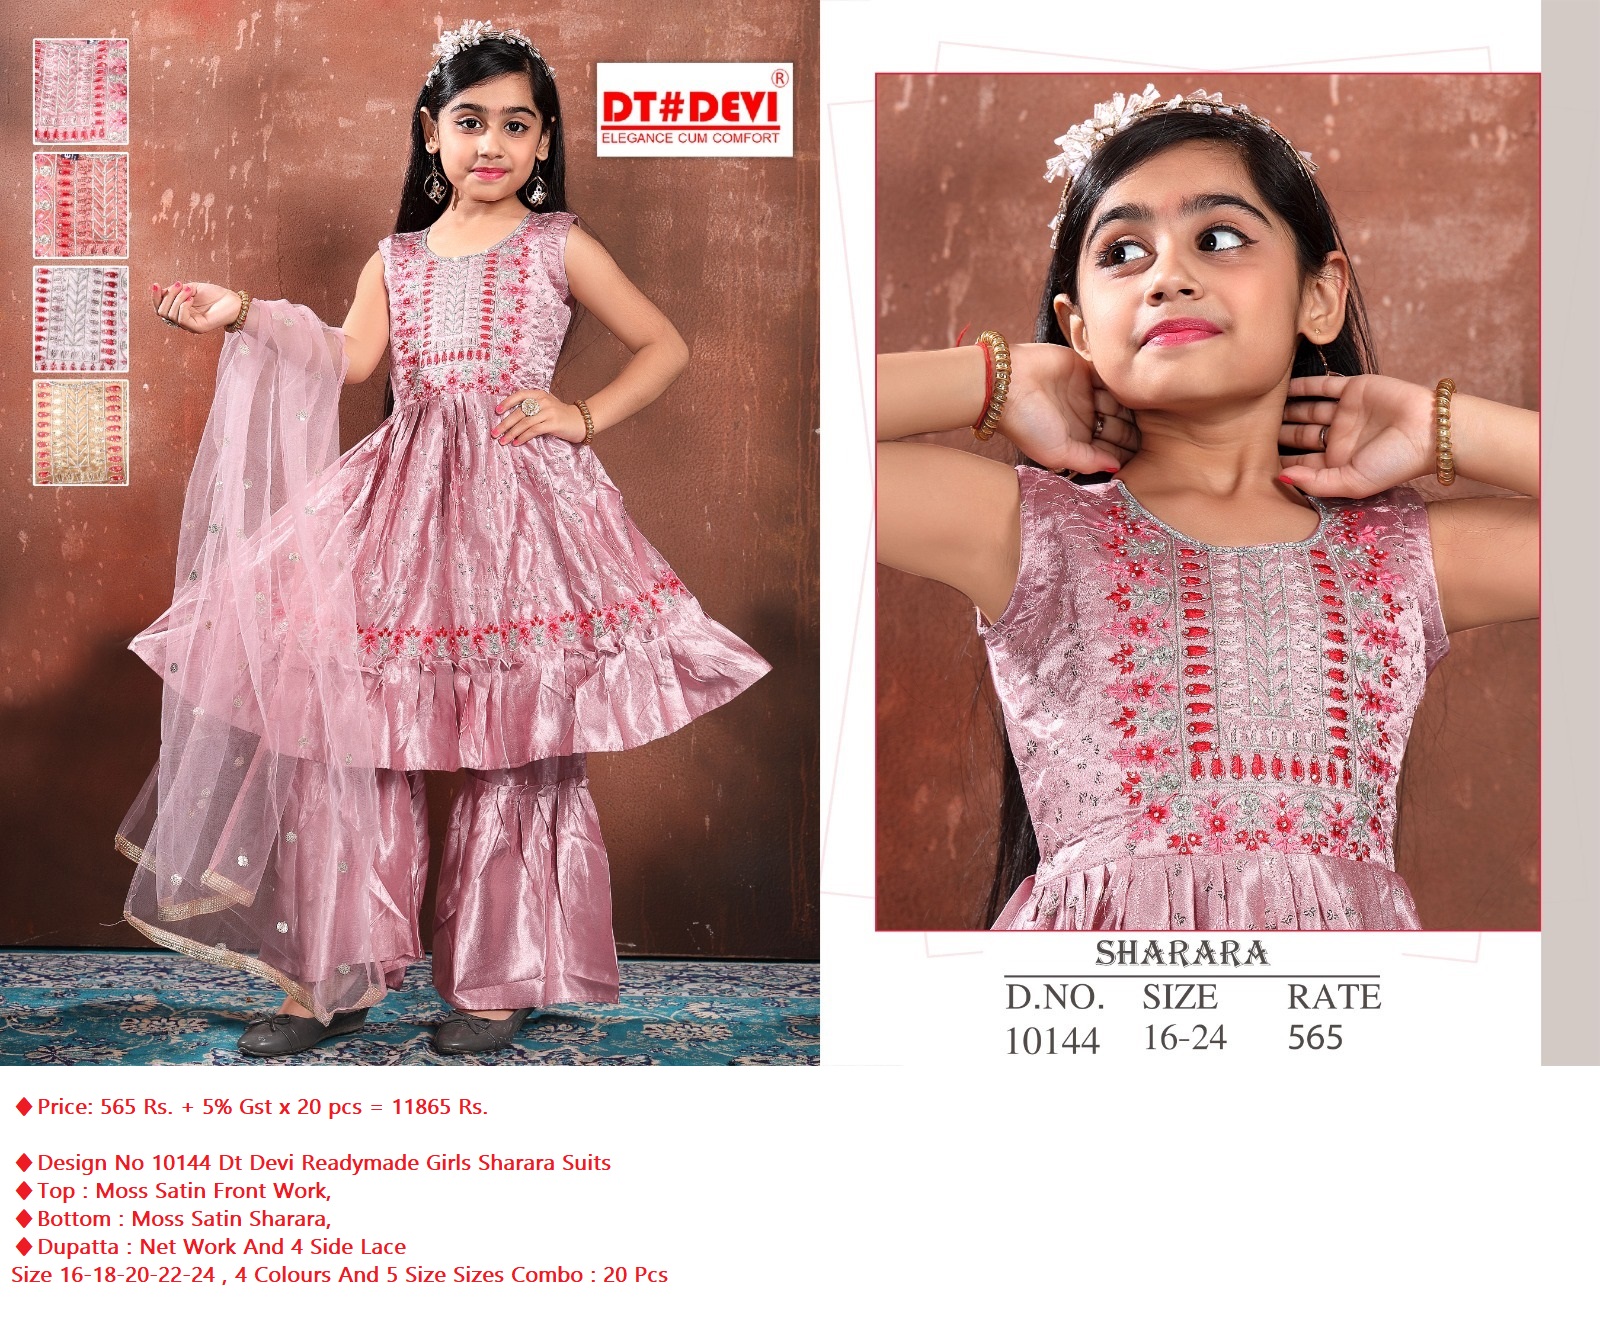 Dt Devi Design No 10144 Readymade Girls Sharara Dress Catalog Lowest Price